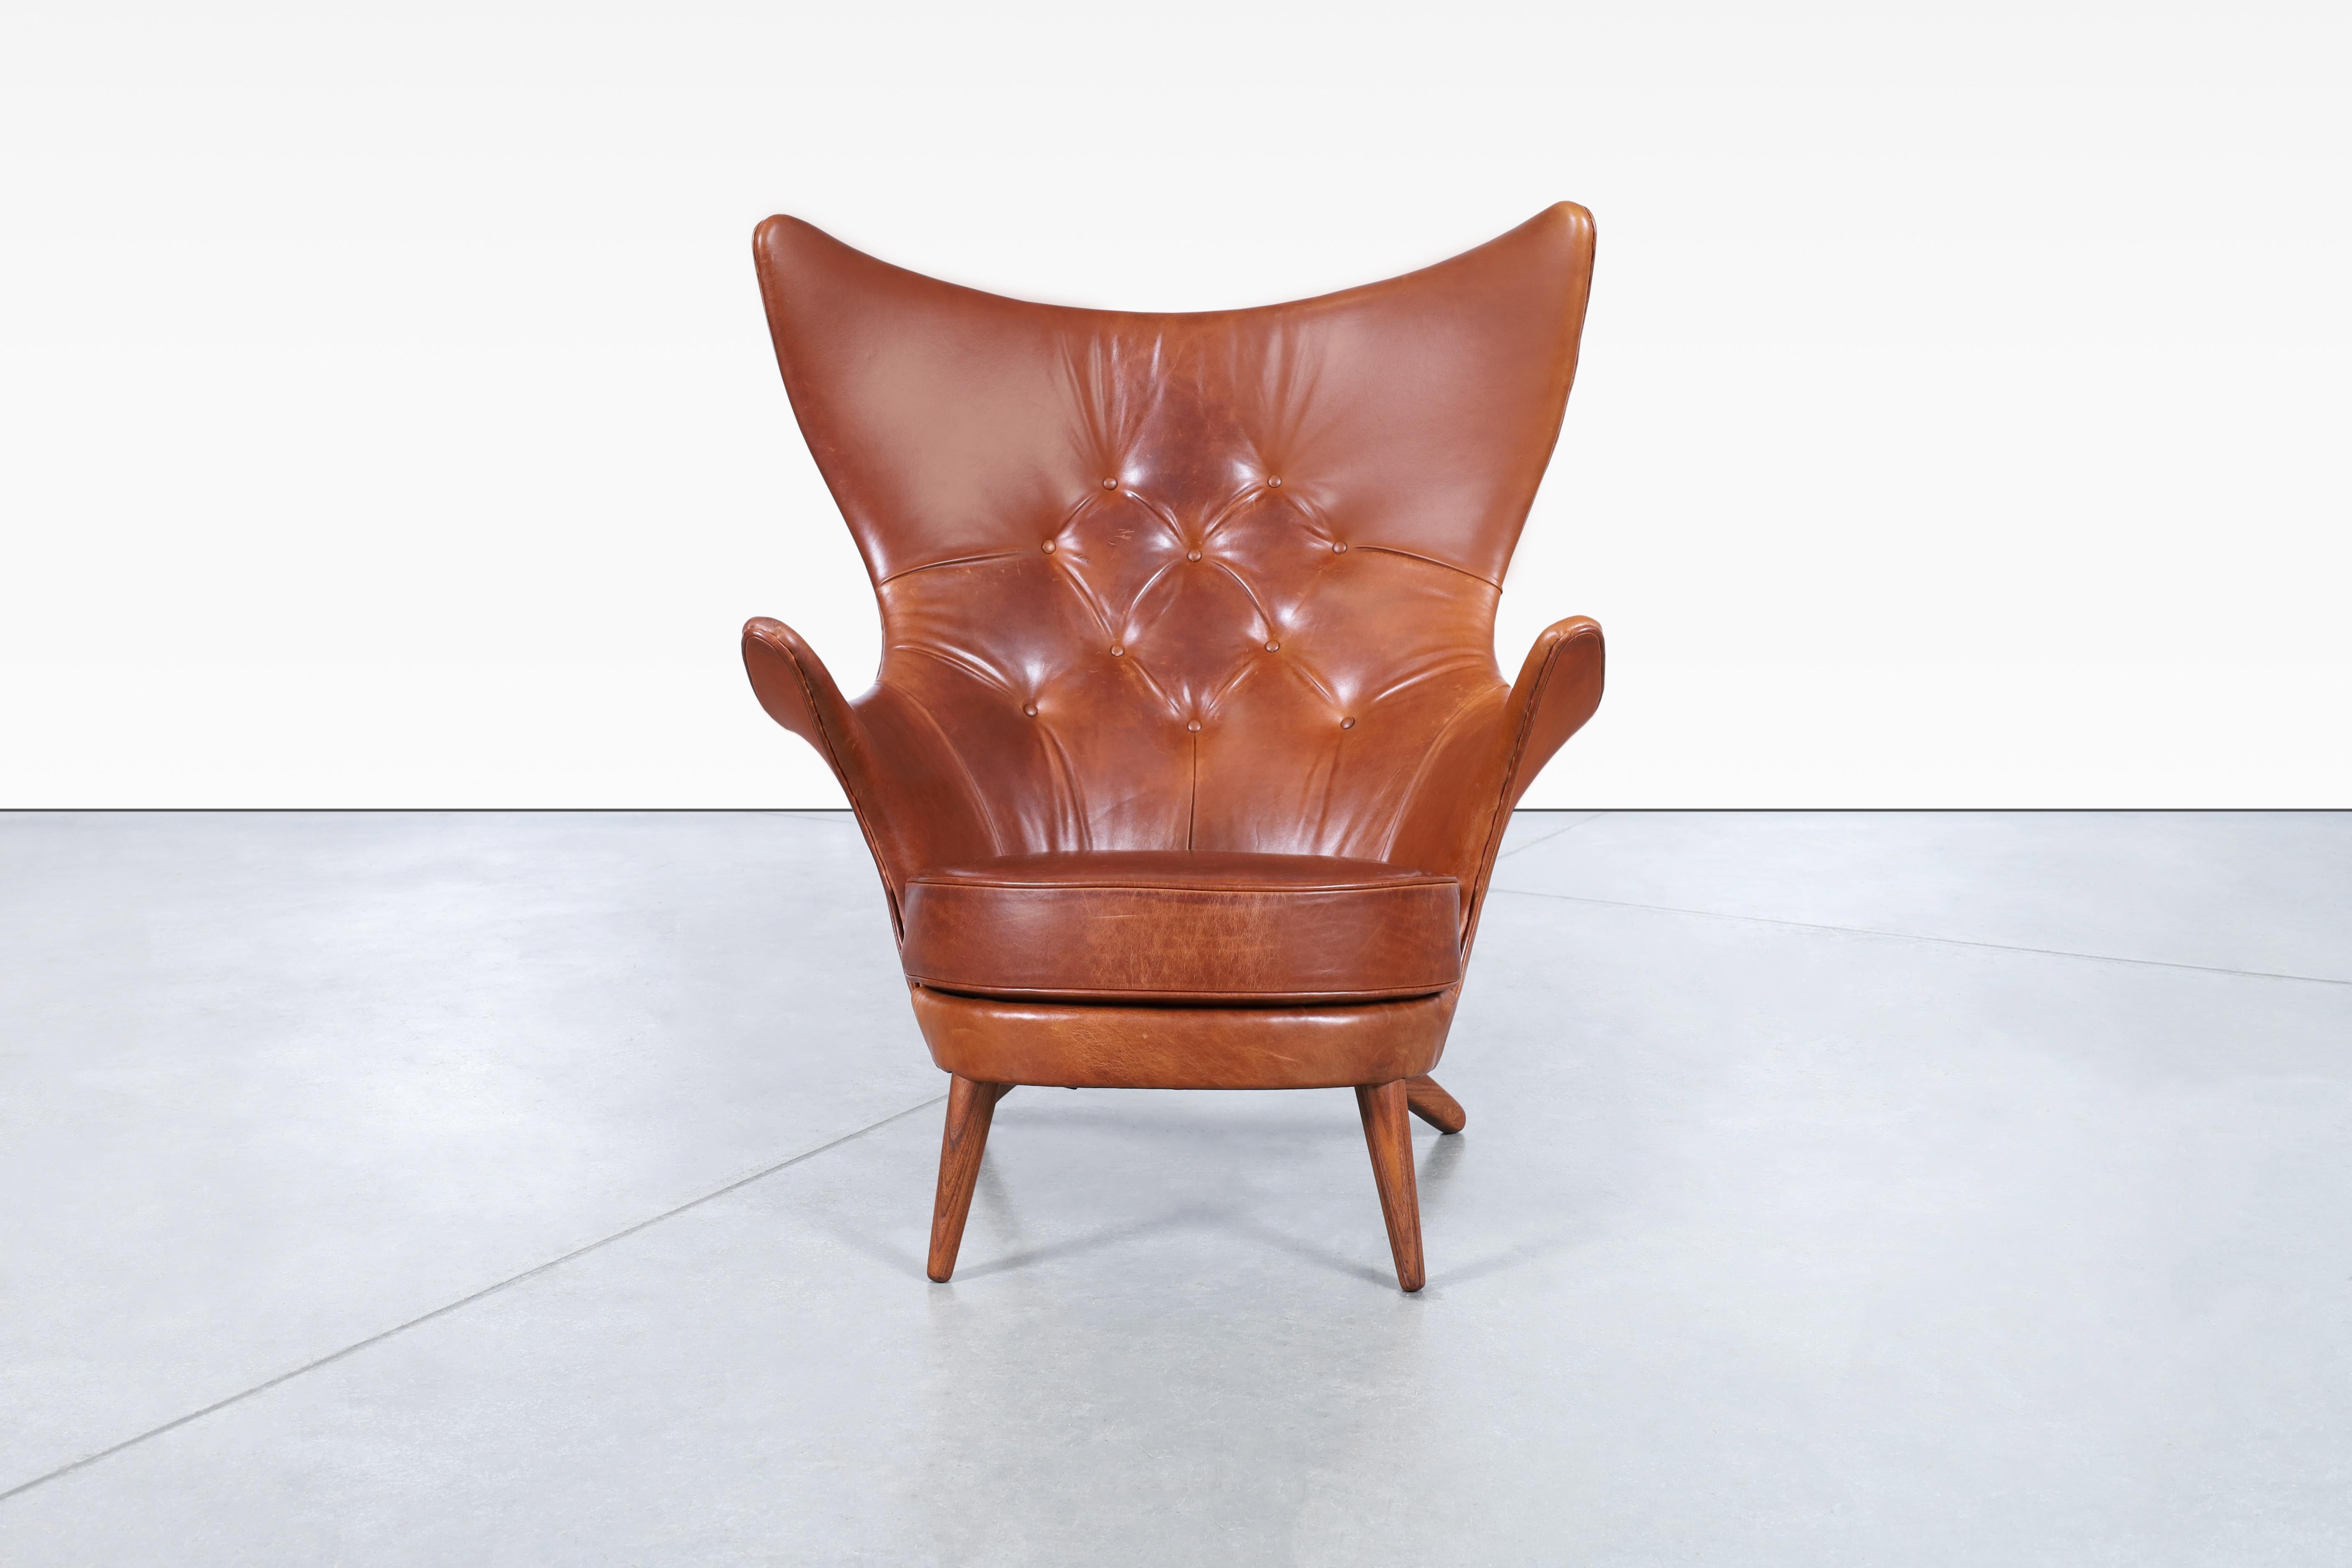 Wunderschöner Vintage-Loungesessel aus Leder, entworfen von Kai Bruun für Sesam Møbler in Dänemark, ca. 1960er Jahre. Dieser Sessel, auch Siesta genannt, ist ein wahres Zeugnis der Kunst des Möbelbaus. Er ist mit feinstem italienischen Leder und